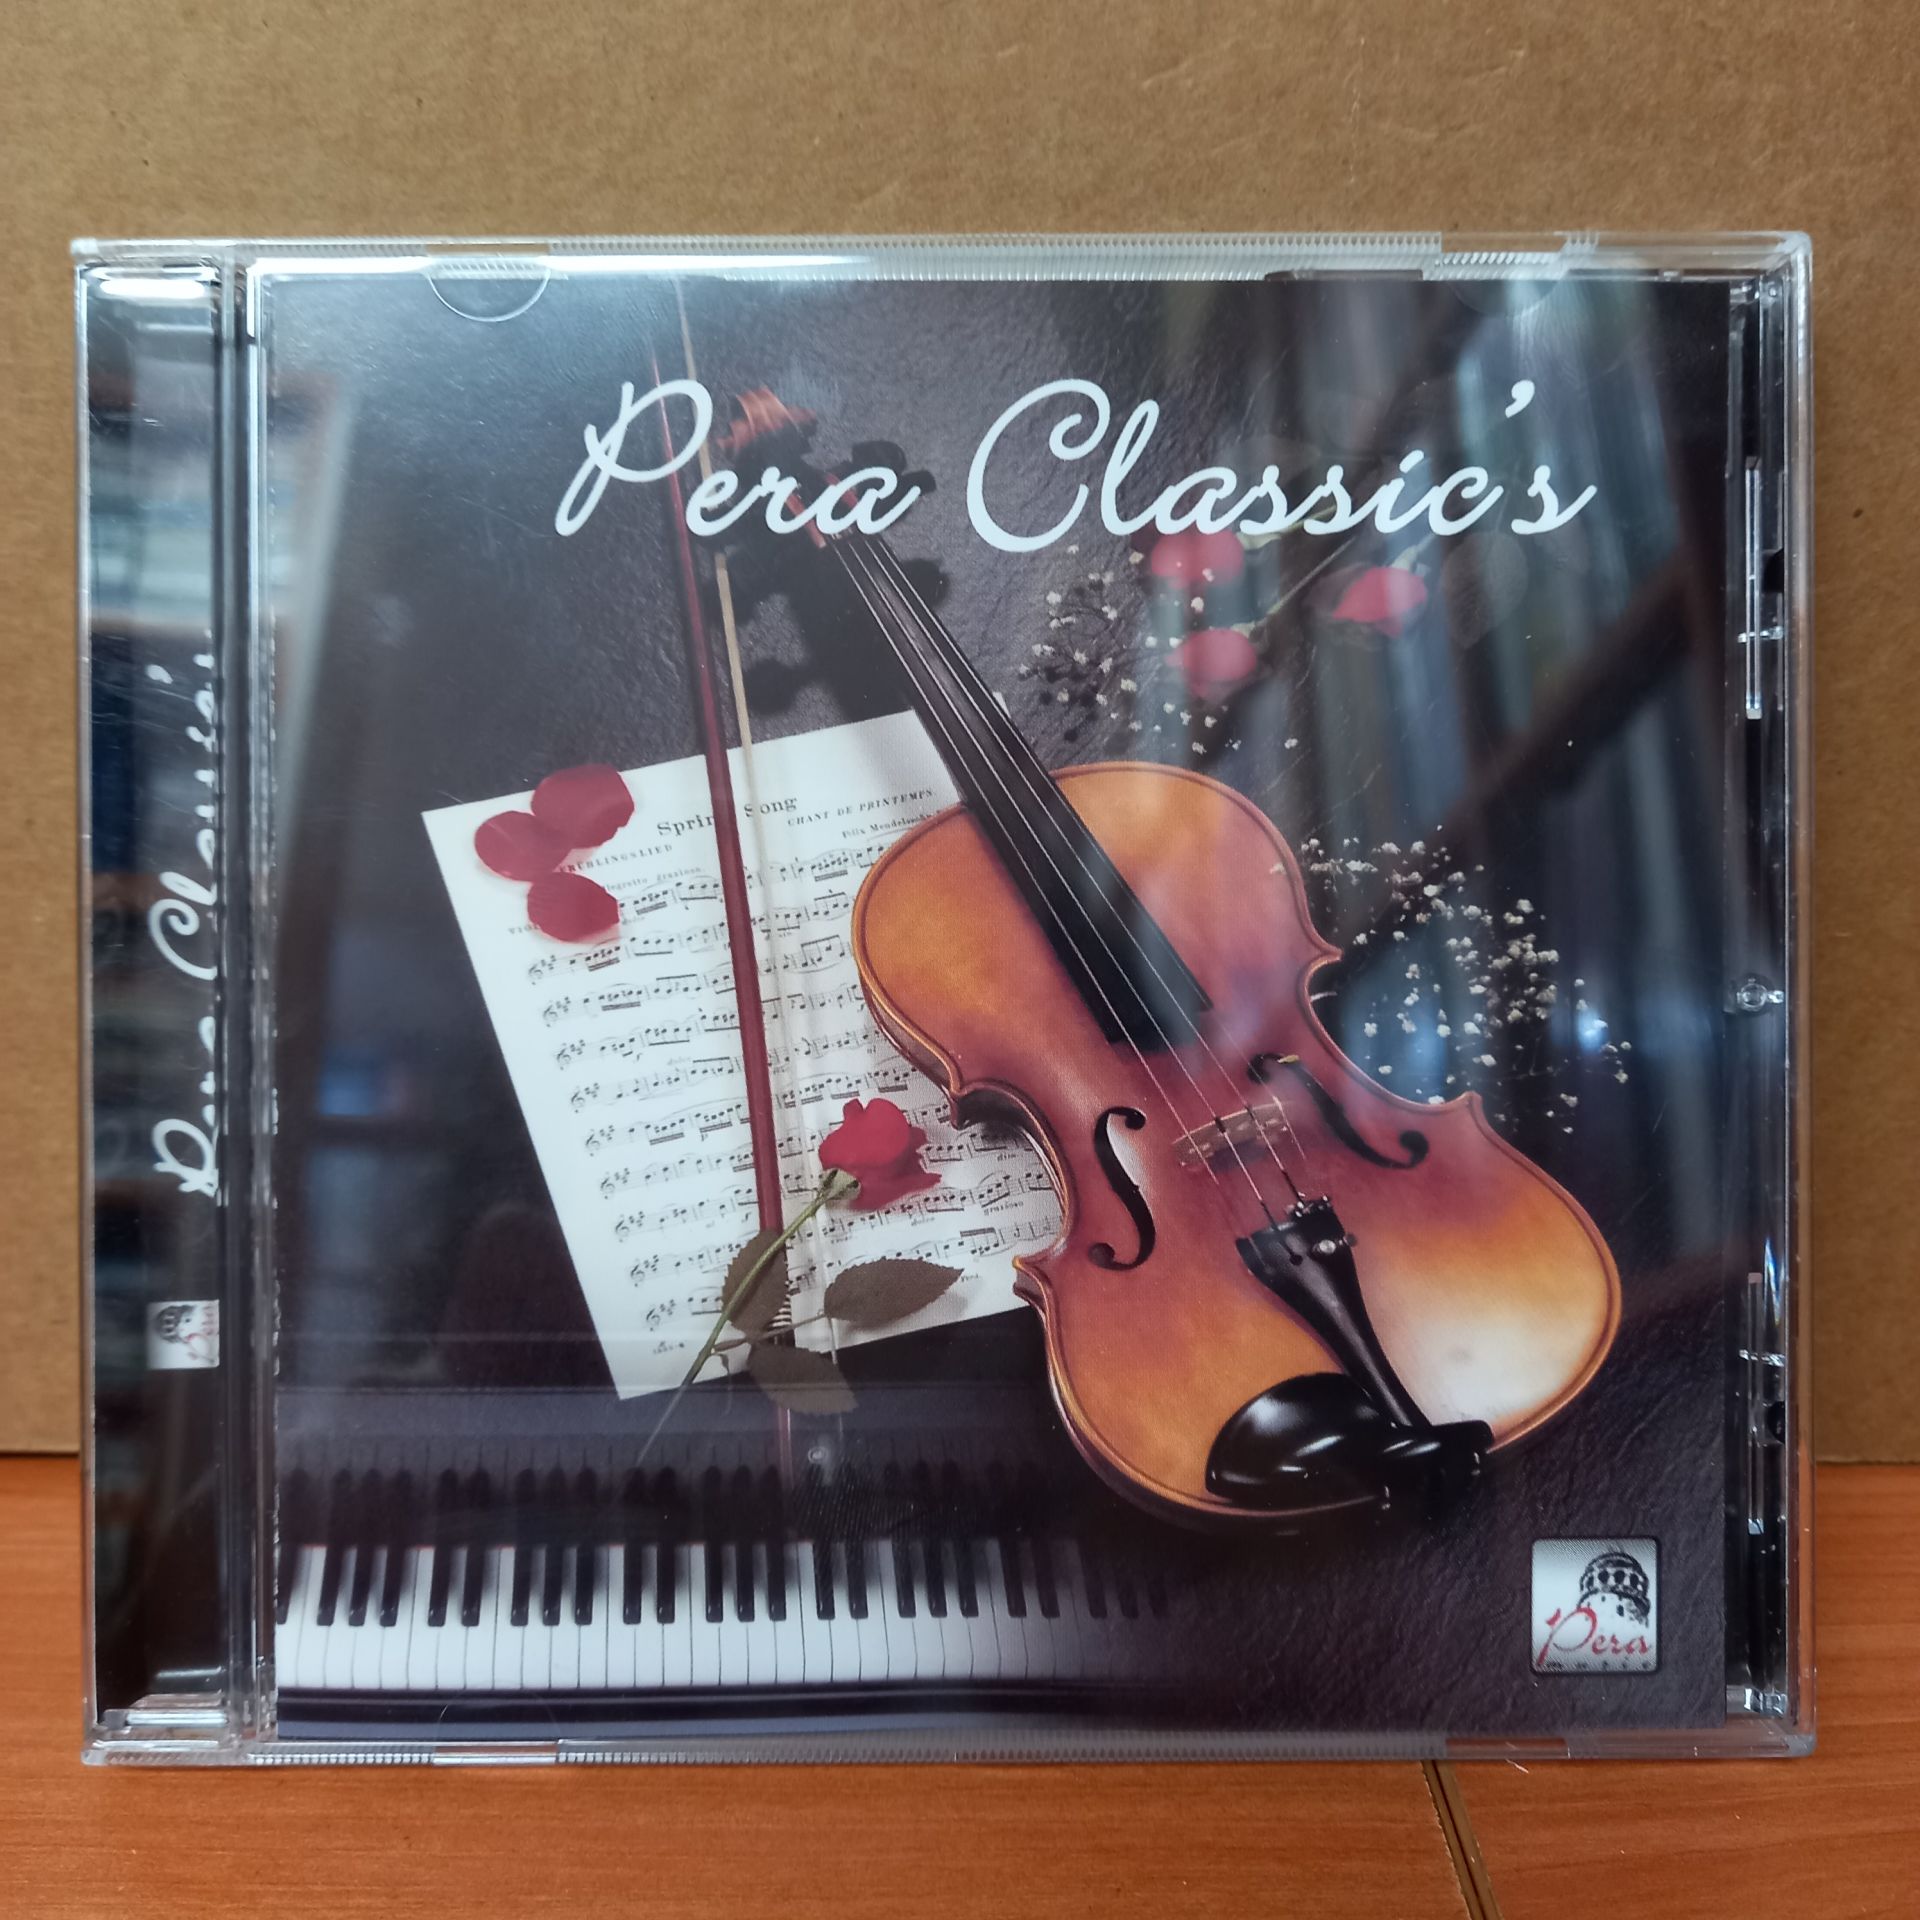 PERA CLASSIC'S - CD 2.EL